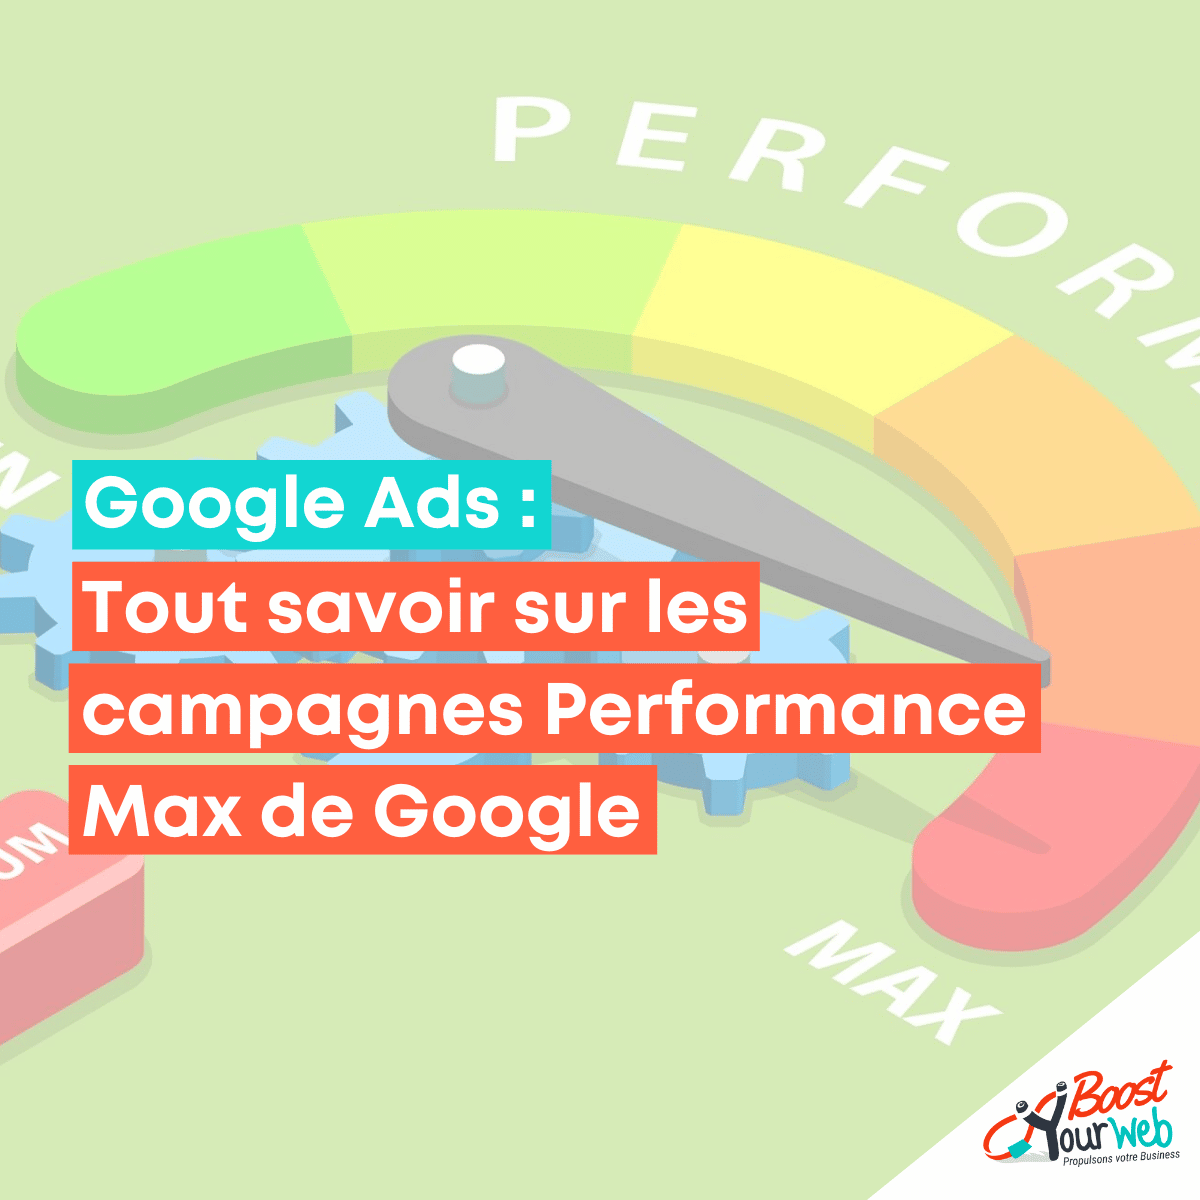 Tout savoir sur les campagnes Performance Max de Google